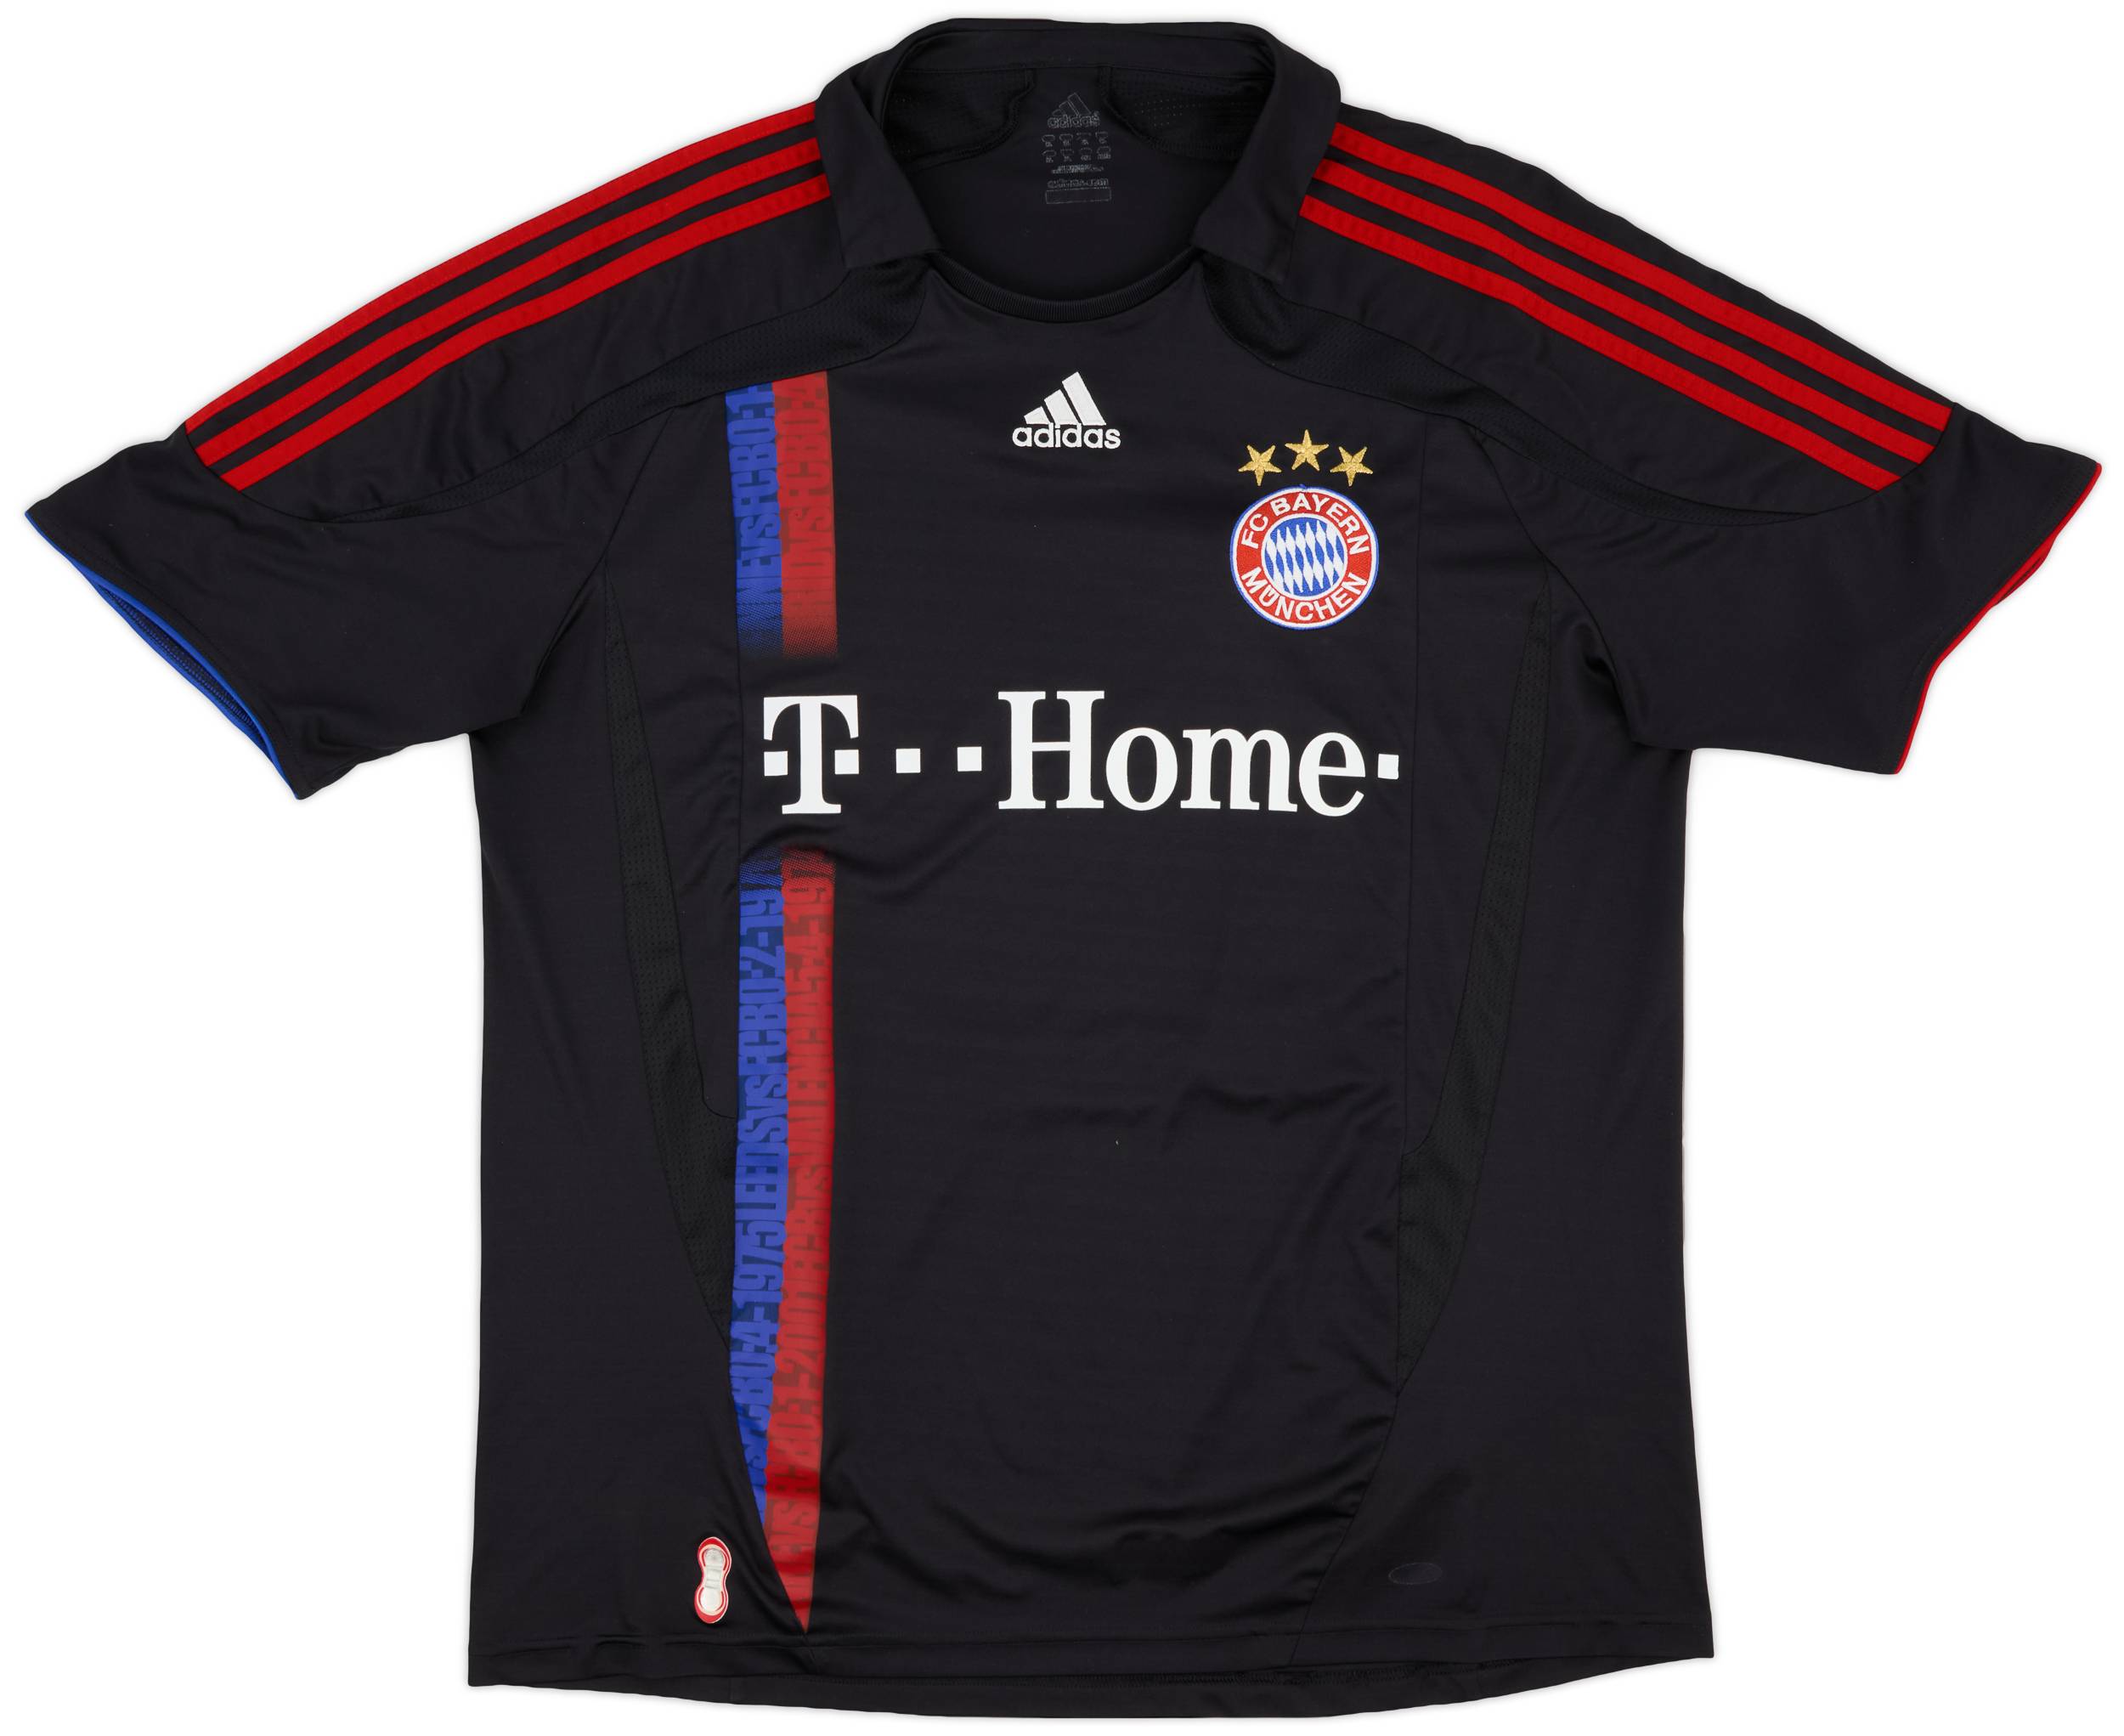 2007-08 Bayern Munich Third Shirt - 8/10 - (XL)